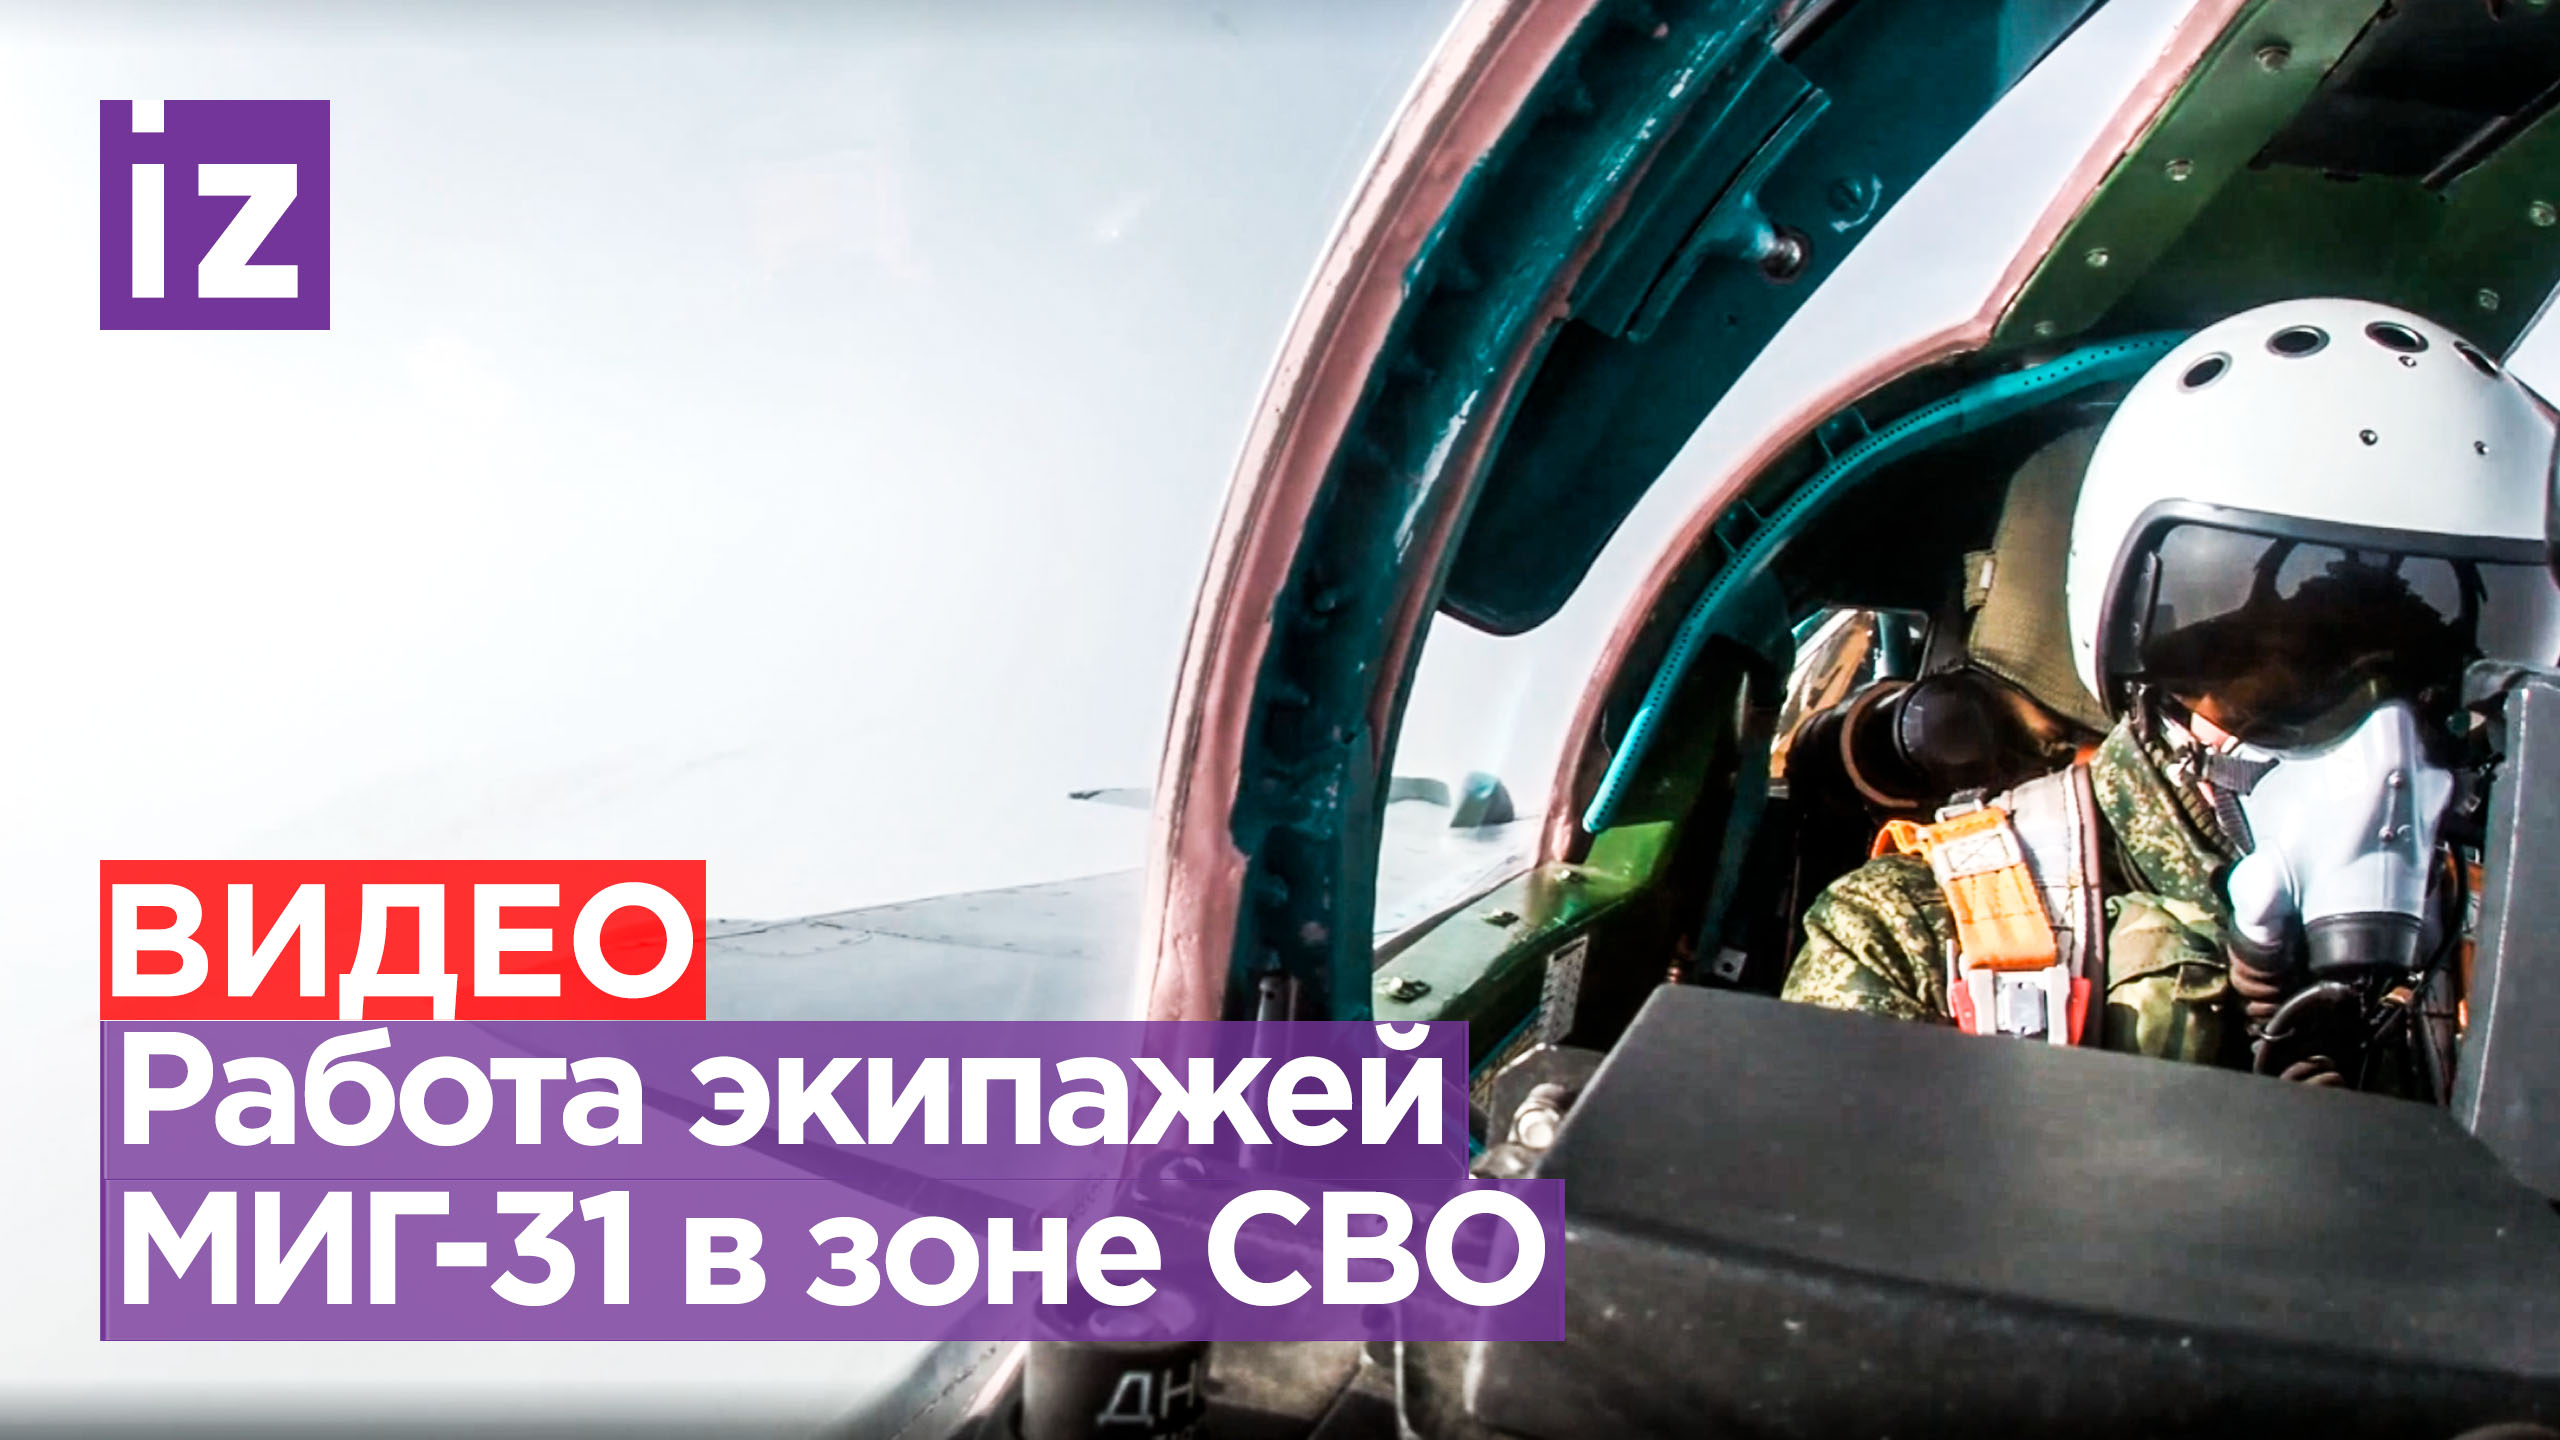 Впечатляющие кадры боевых вылетов истребителей МиГ-31 / Известия